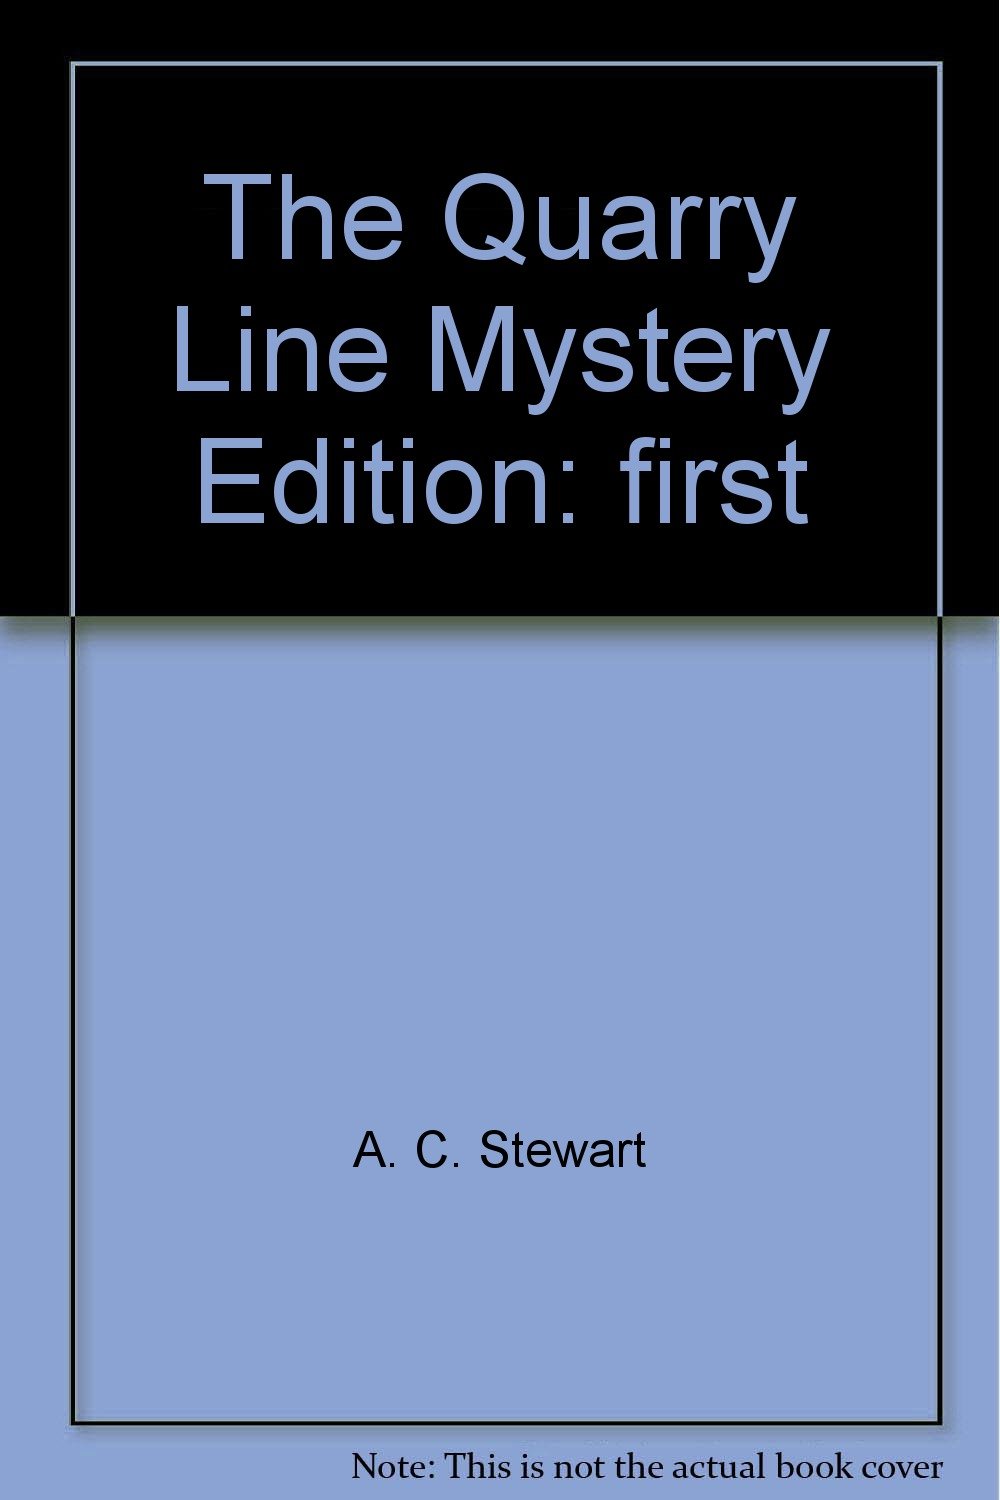 The quarry line mystery magazine reviews